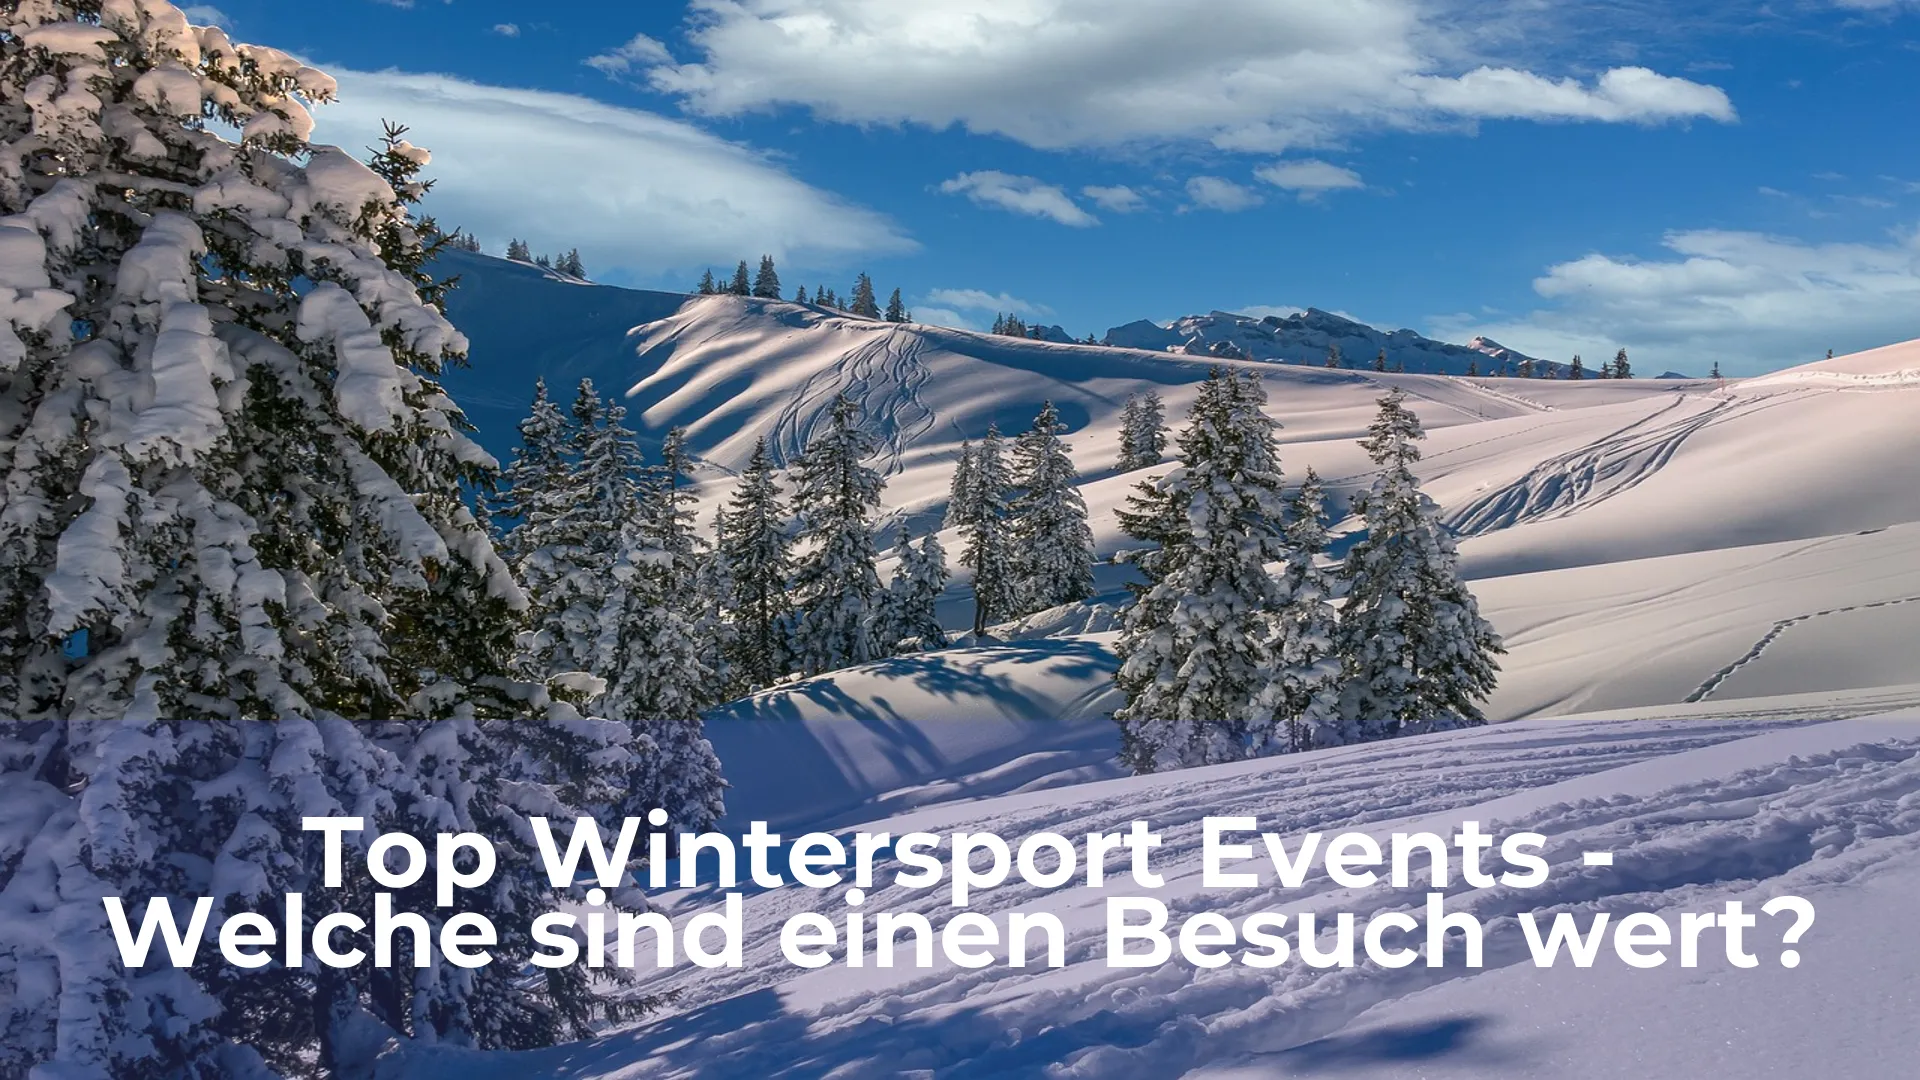 Top wintersport events welche sind einen besuch wert